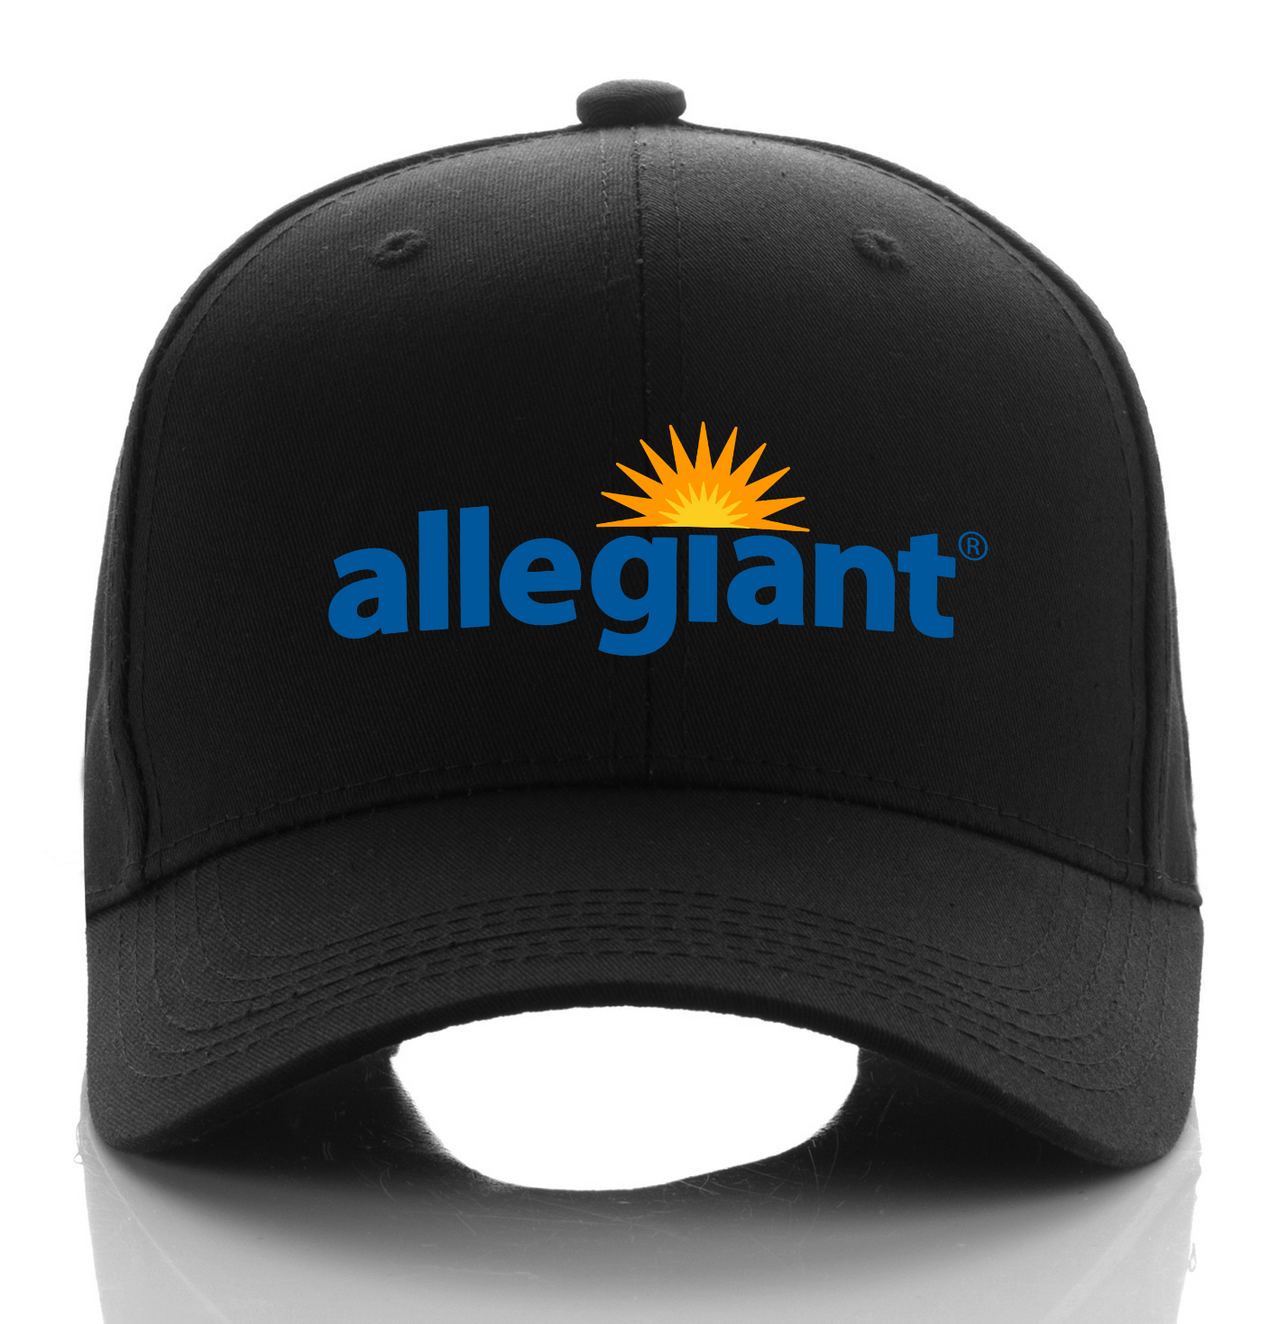 AIIEGIANT AIRLINE DESIGNED CAP